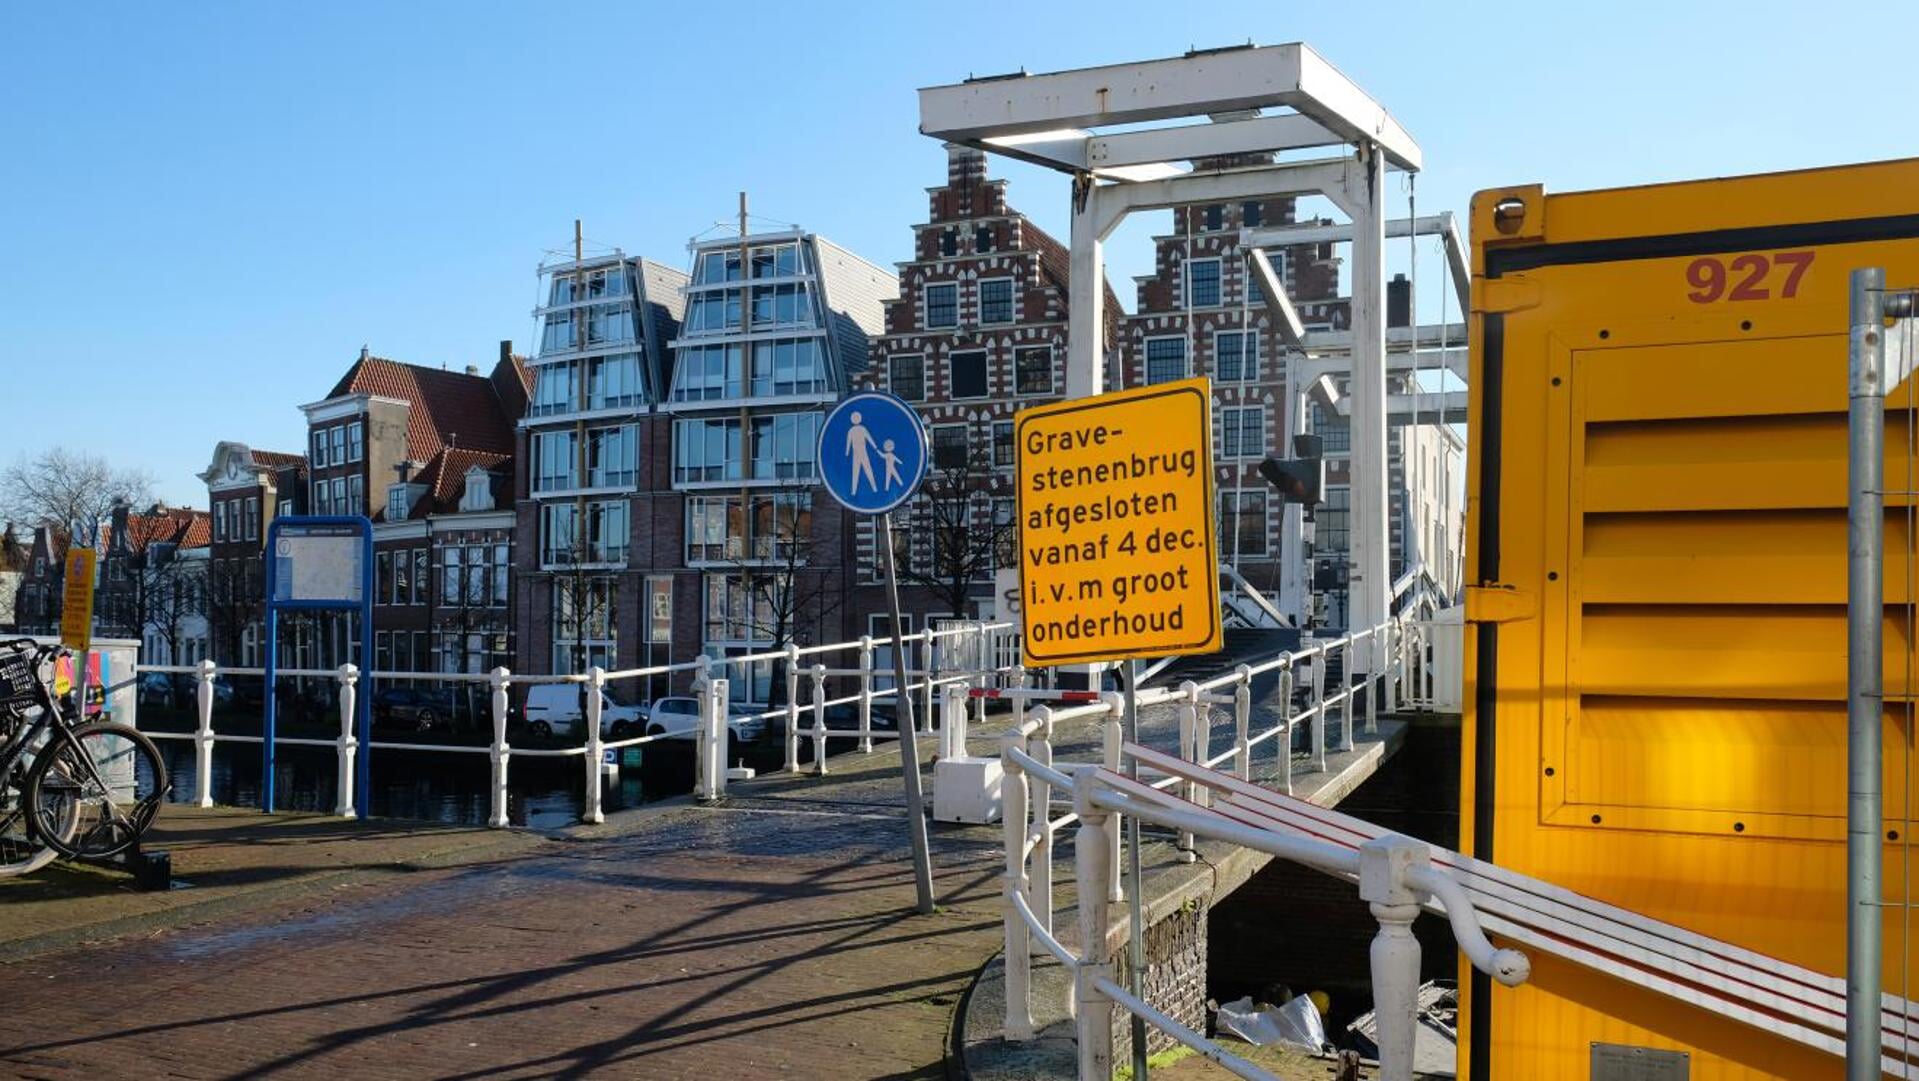 De brug gaat voor onderhoud naar Amsterdam